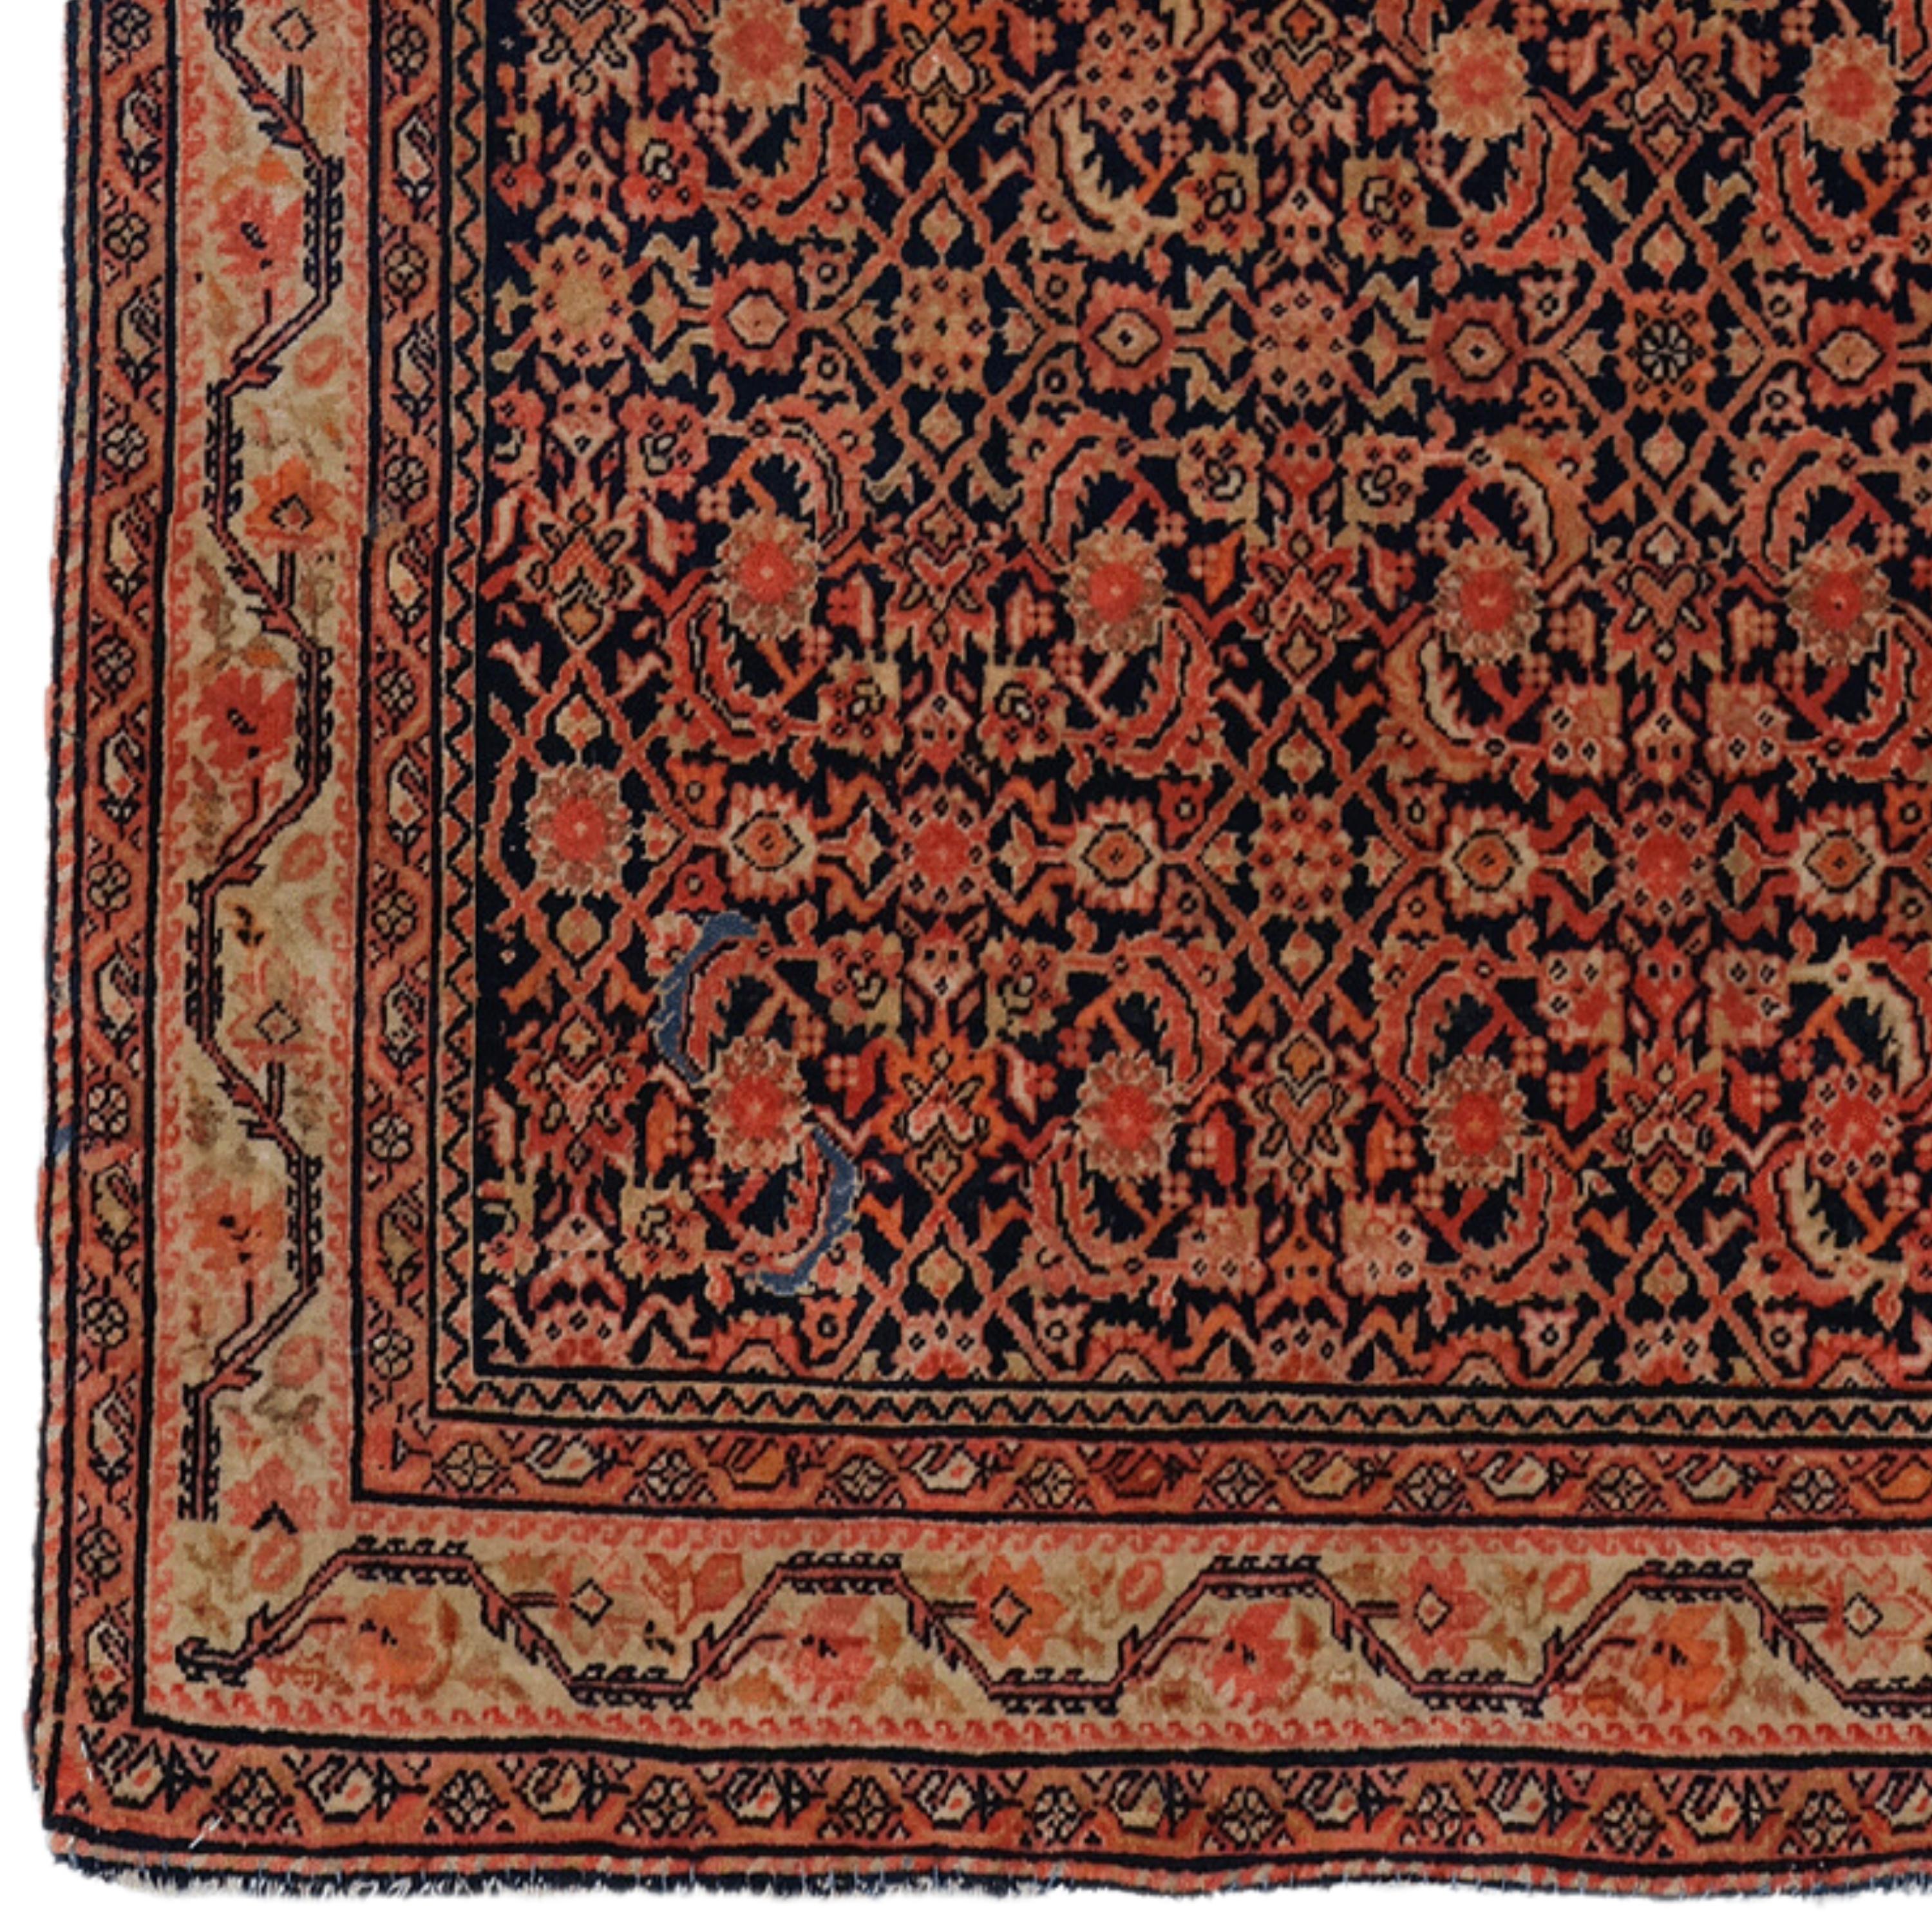 Cet élégant tapis Eleg du XIXe siècle est un exemple de l'artisanat le plus exquis de son époque. Il ajoute de la noblesse à tout espace grâce à sa riche histoire et à son design sophistiqué. Des motifs rouges et dorés éclatants brodés sur un fond